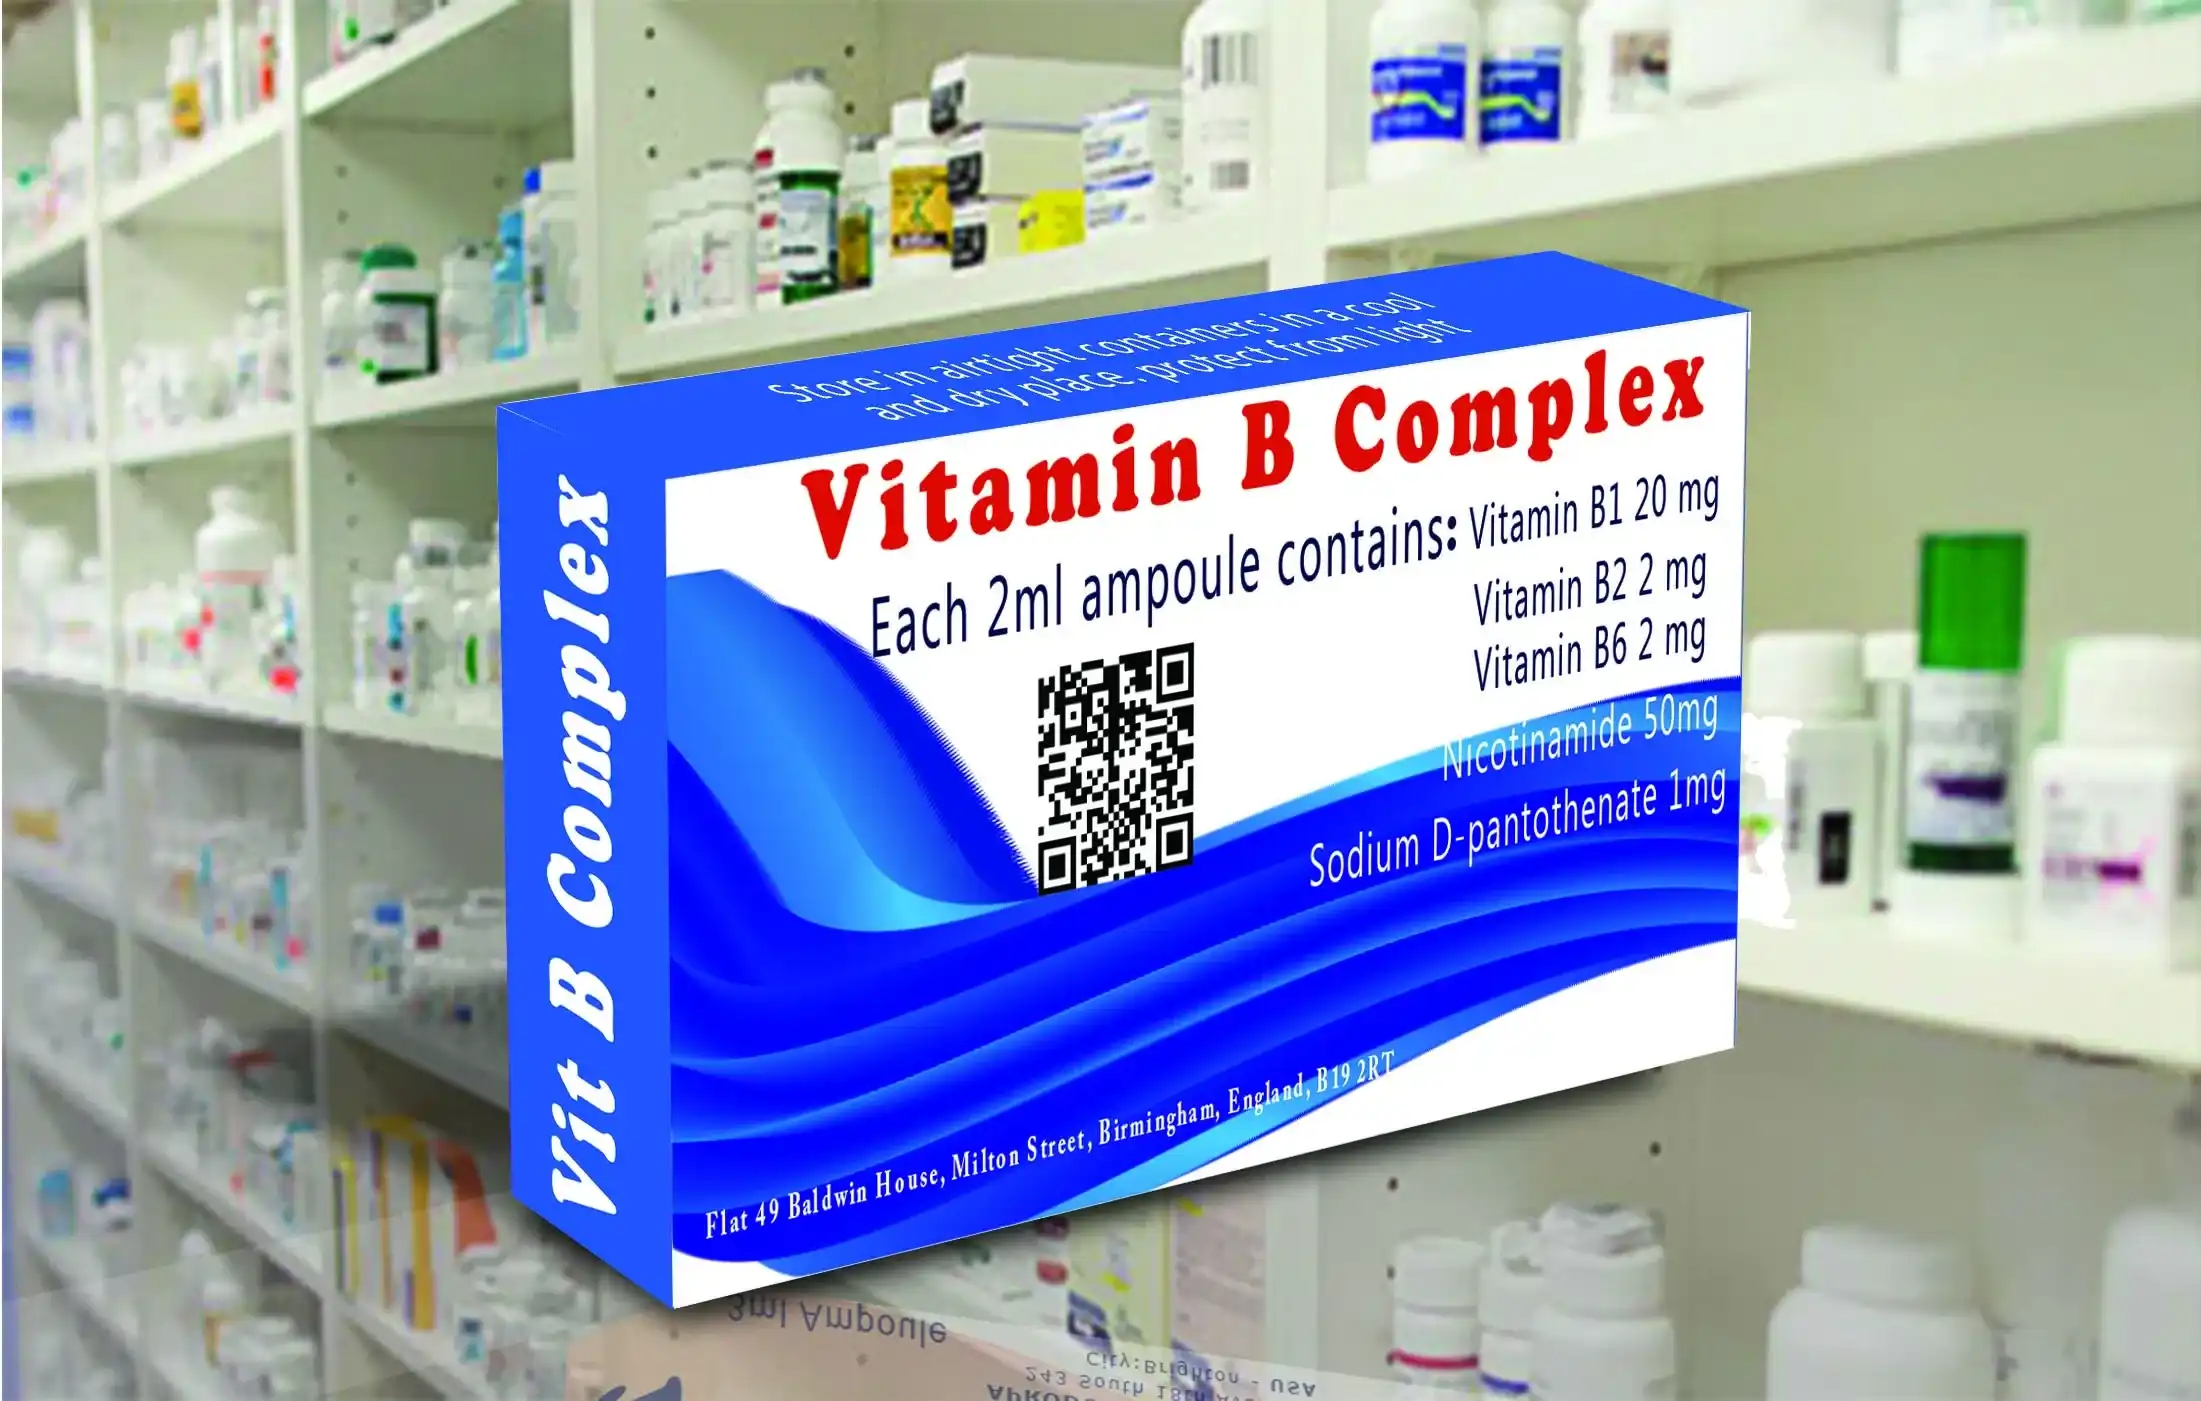 'Vitamin B-Complex injections', 'Vitamin B-Complex ampoules', 'Vitamines', 'Vitamin B-Complex'